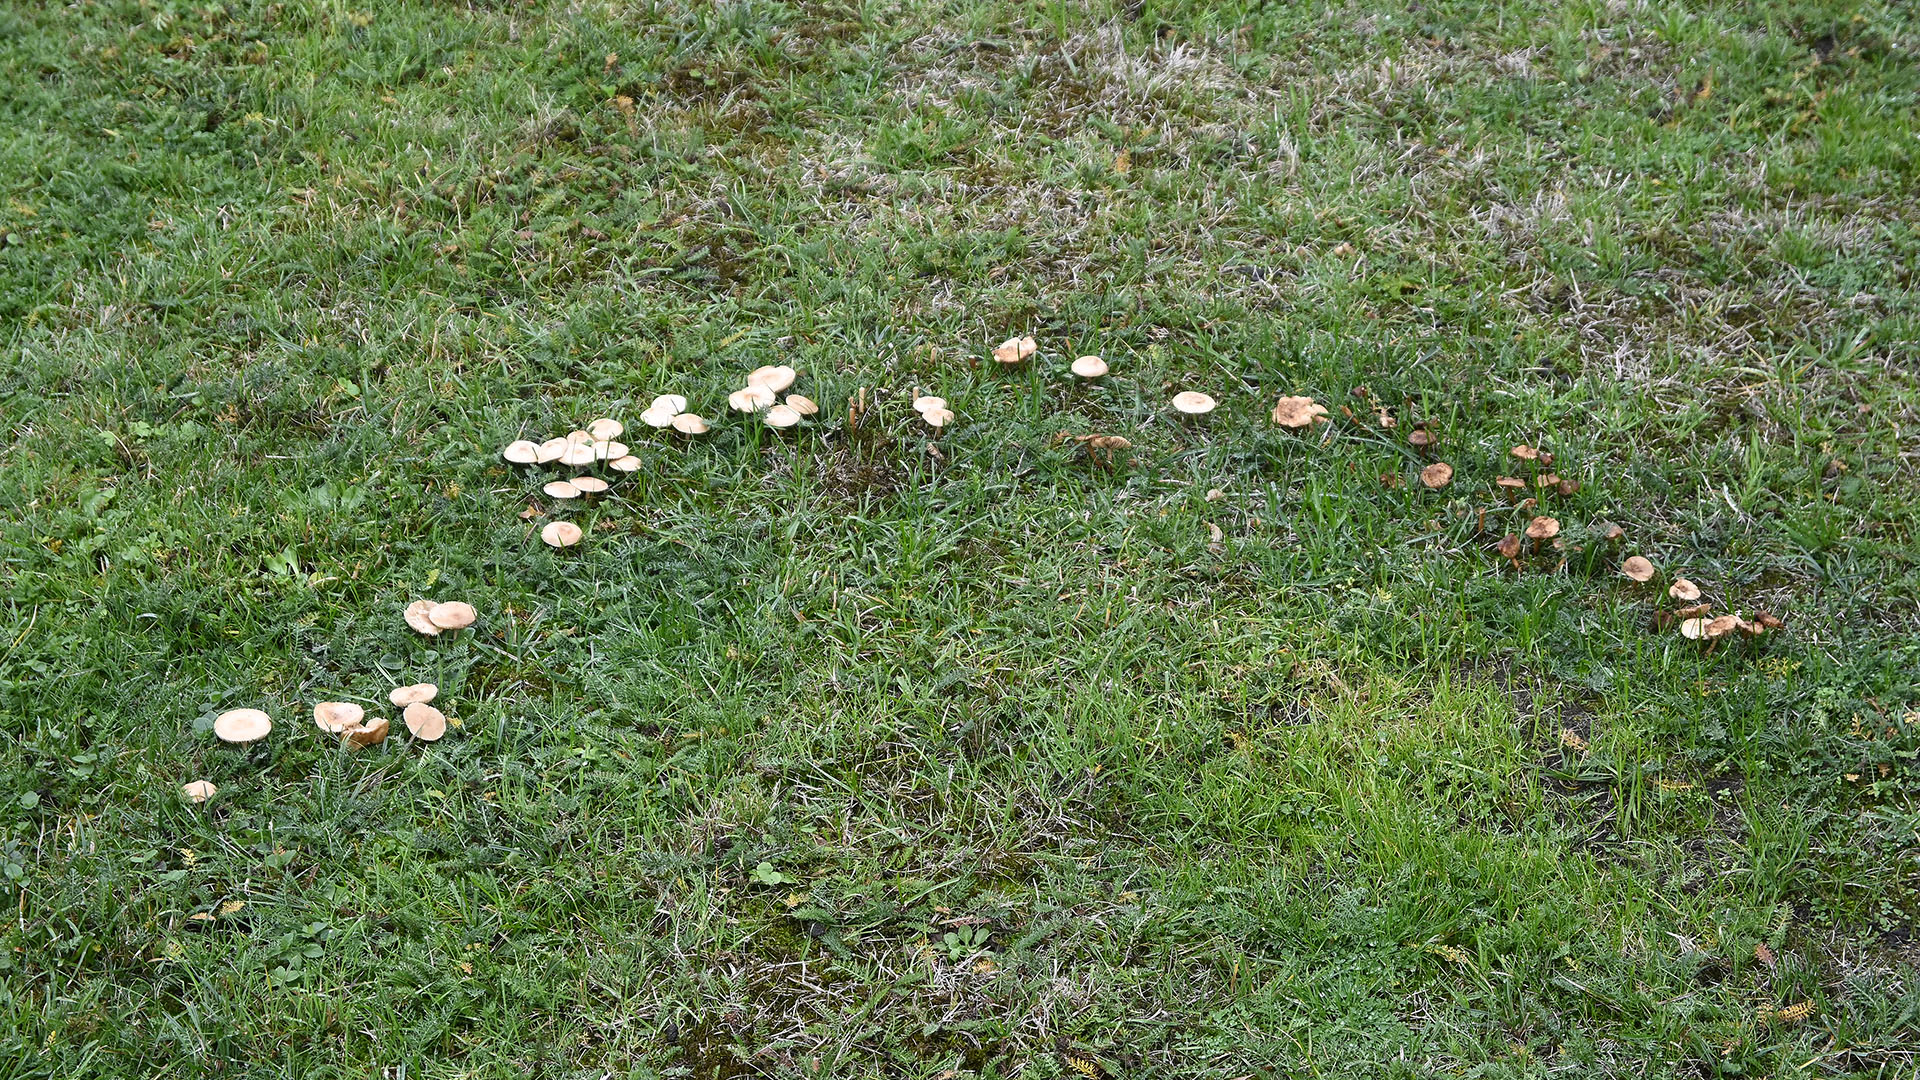 Pilzhalbkreis auf einer Wiese nach dem Regen.